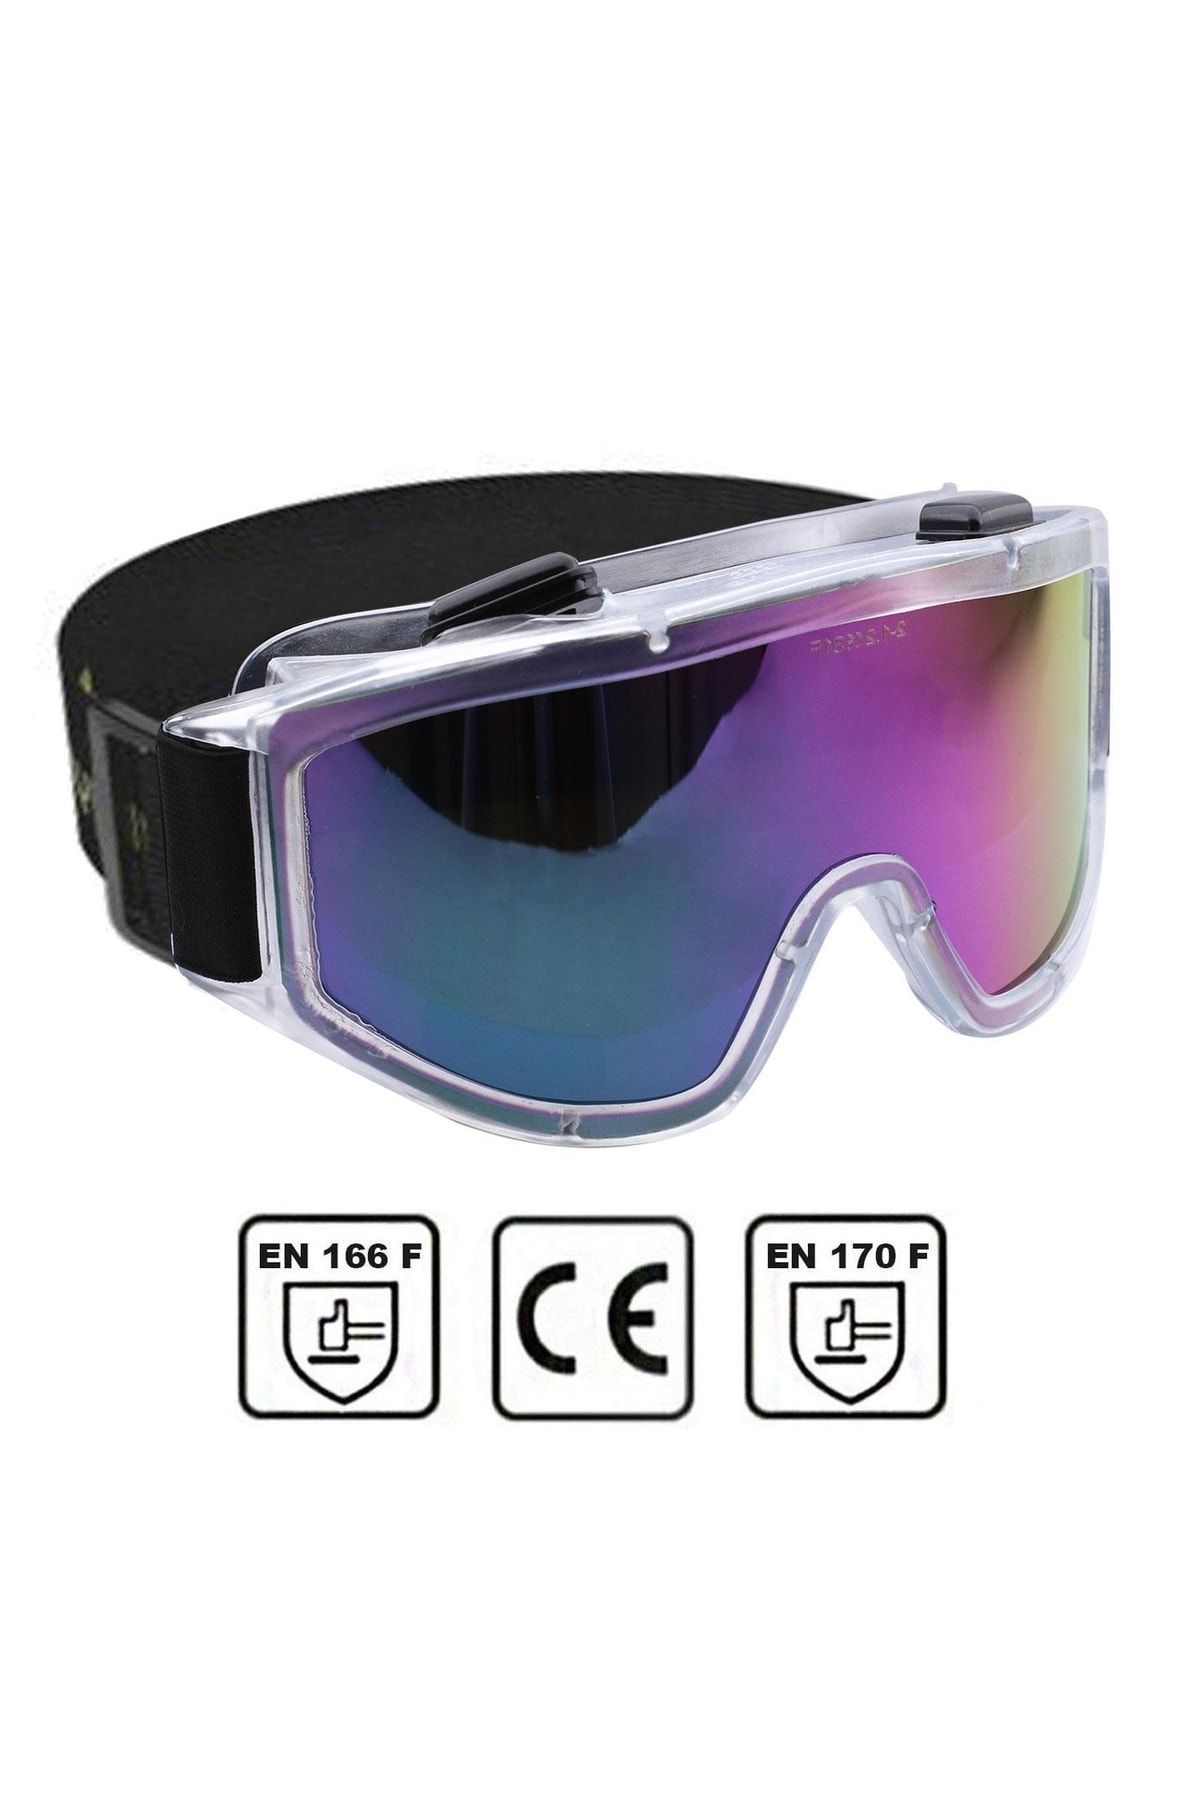 Badem10 Iş Güvenlik Güvenliği Gözlüğü Kaynak Koruyucu Ventilli Gözlük S550 Gökkuşağı Ürünleri